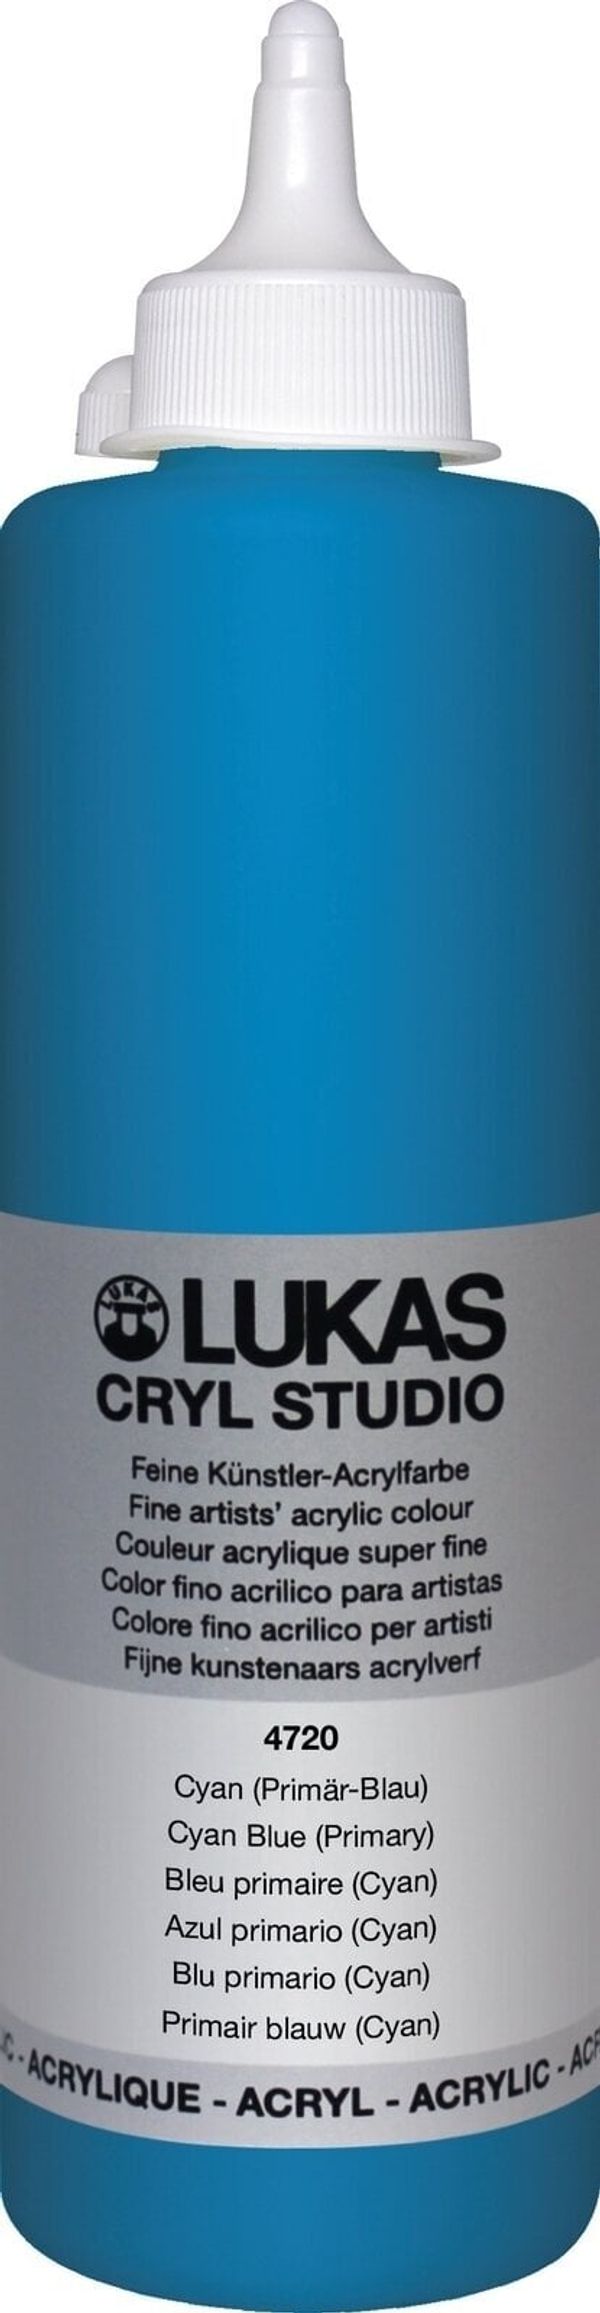 Lukas Lukas Cryl Studio Akrilna barva 500 ml Cyan Blue (Primary)